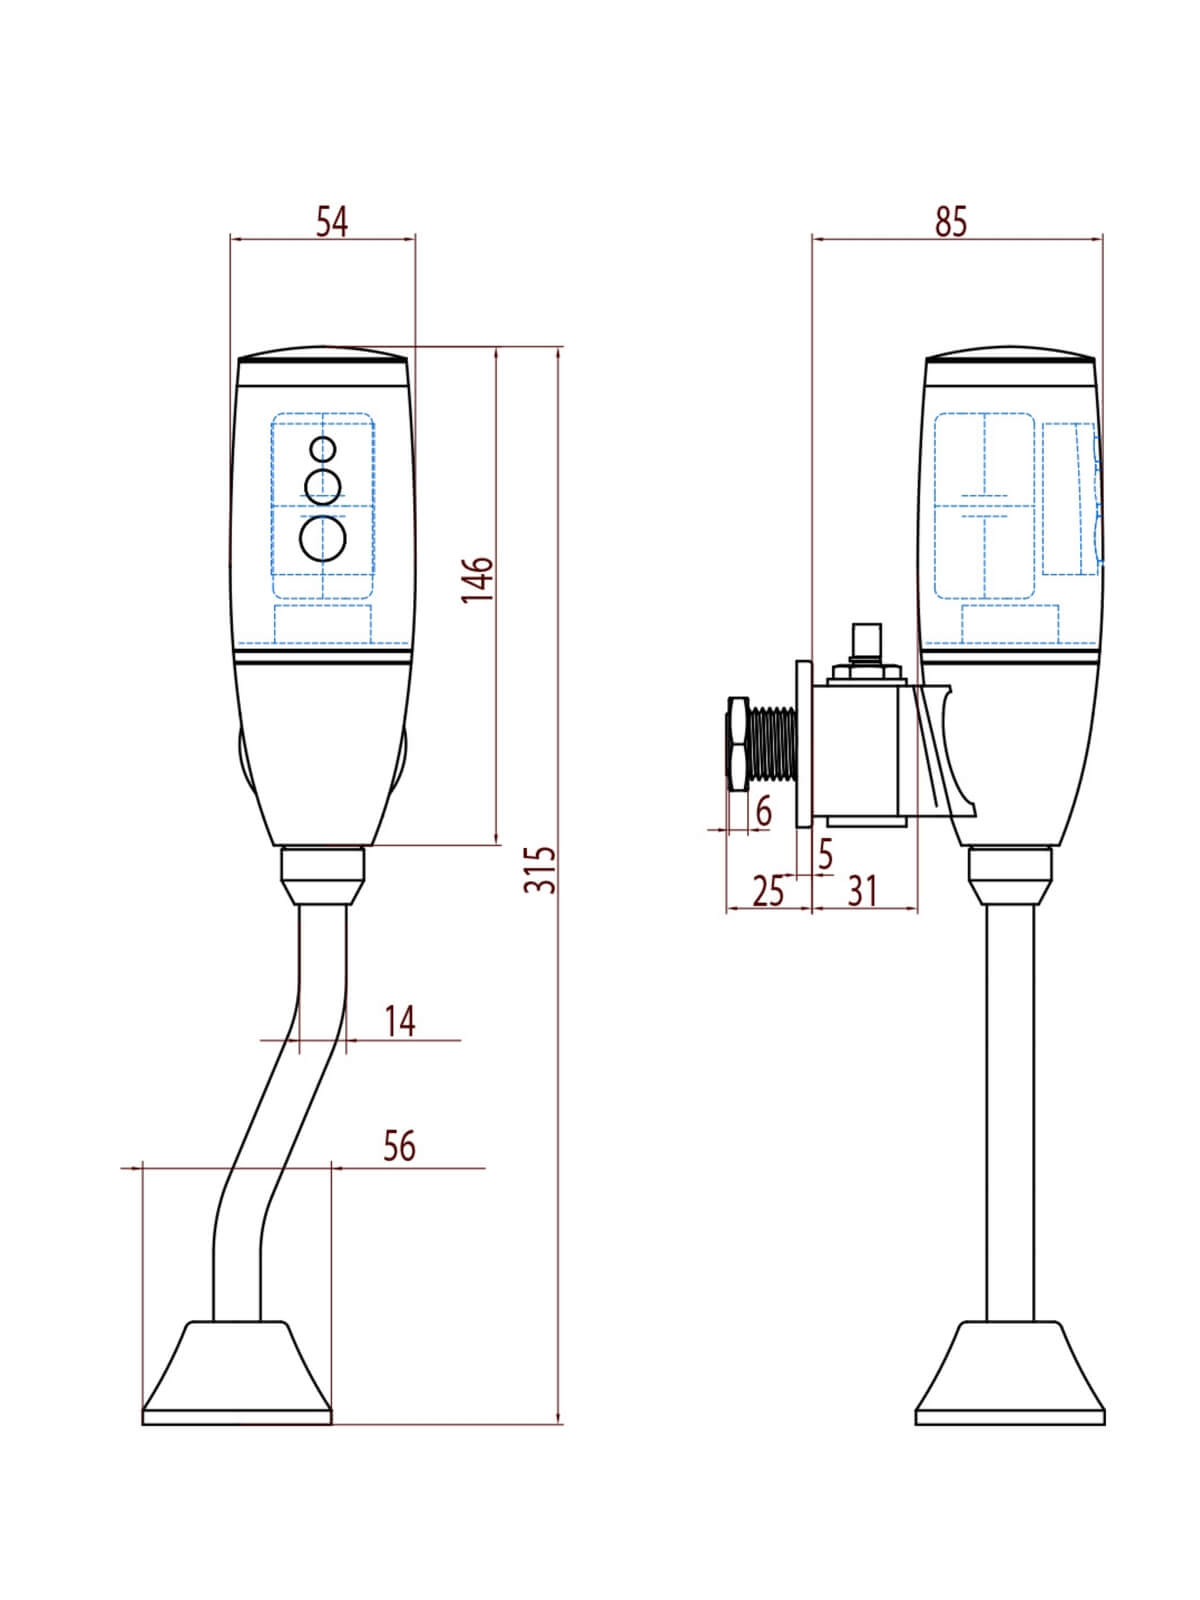 Automatic urinal flush unit KG6329